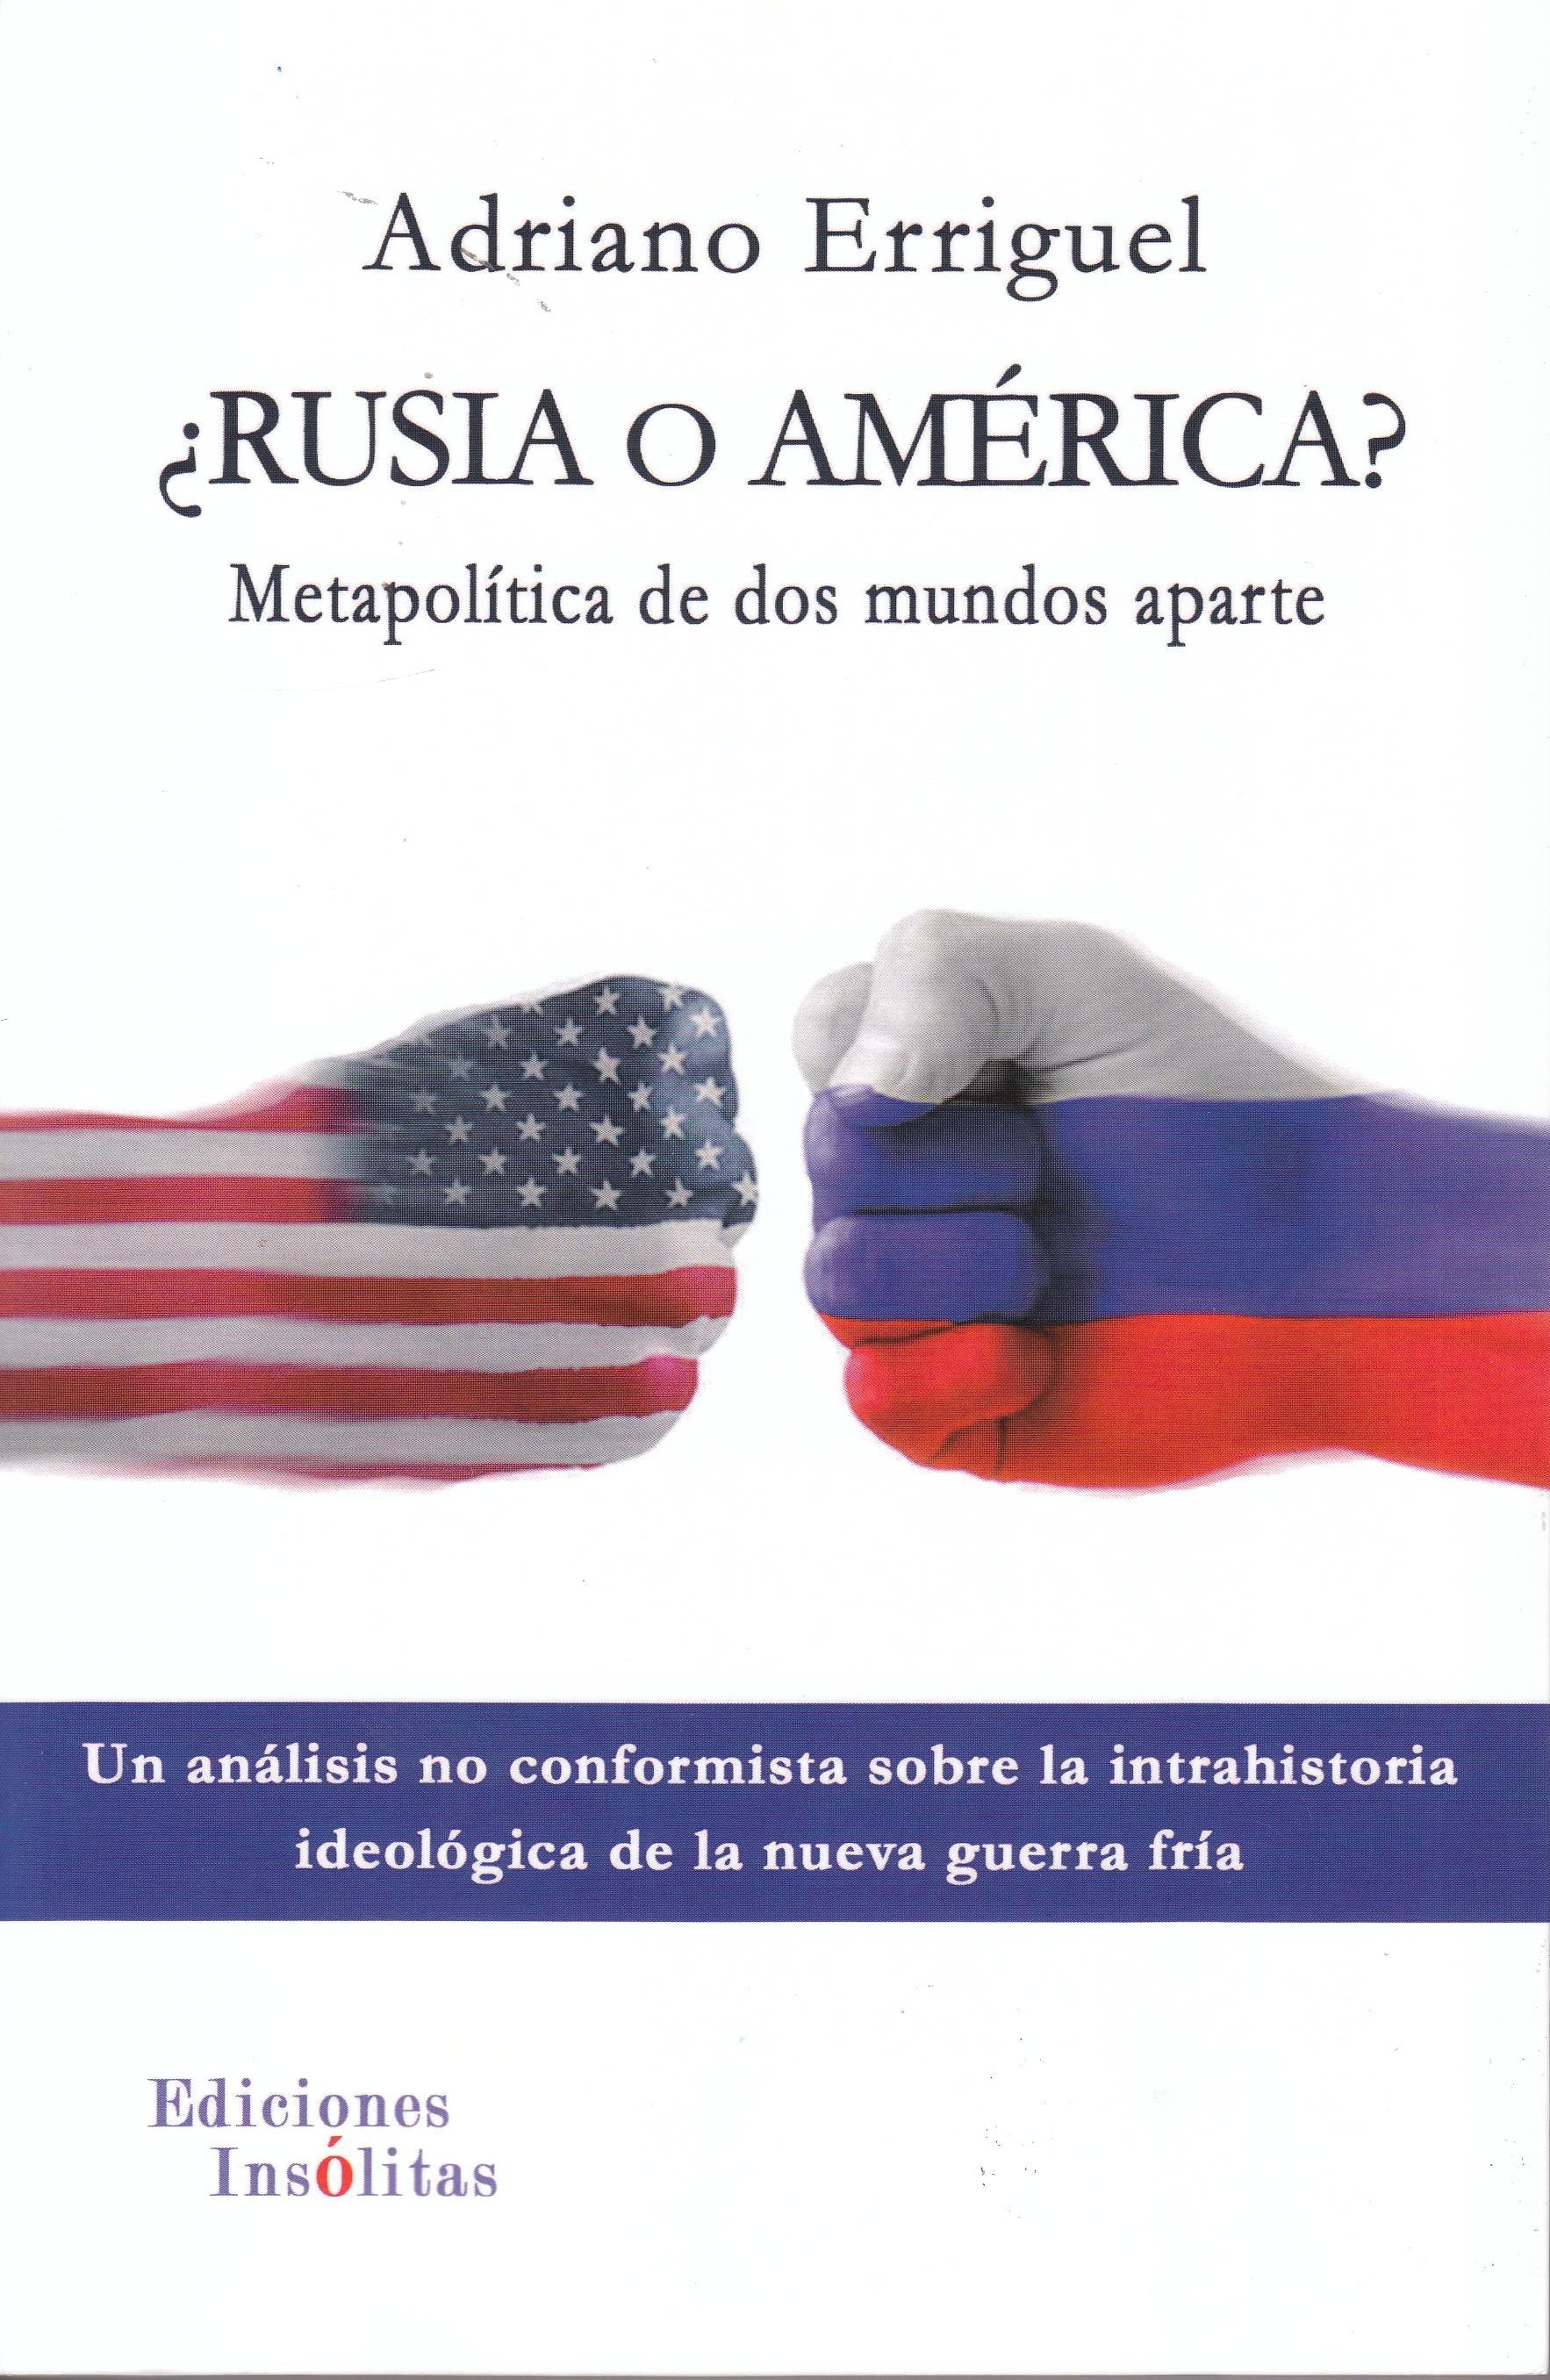 ¿Rusia o América? "Metapolítica de dos mundos aparte" 